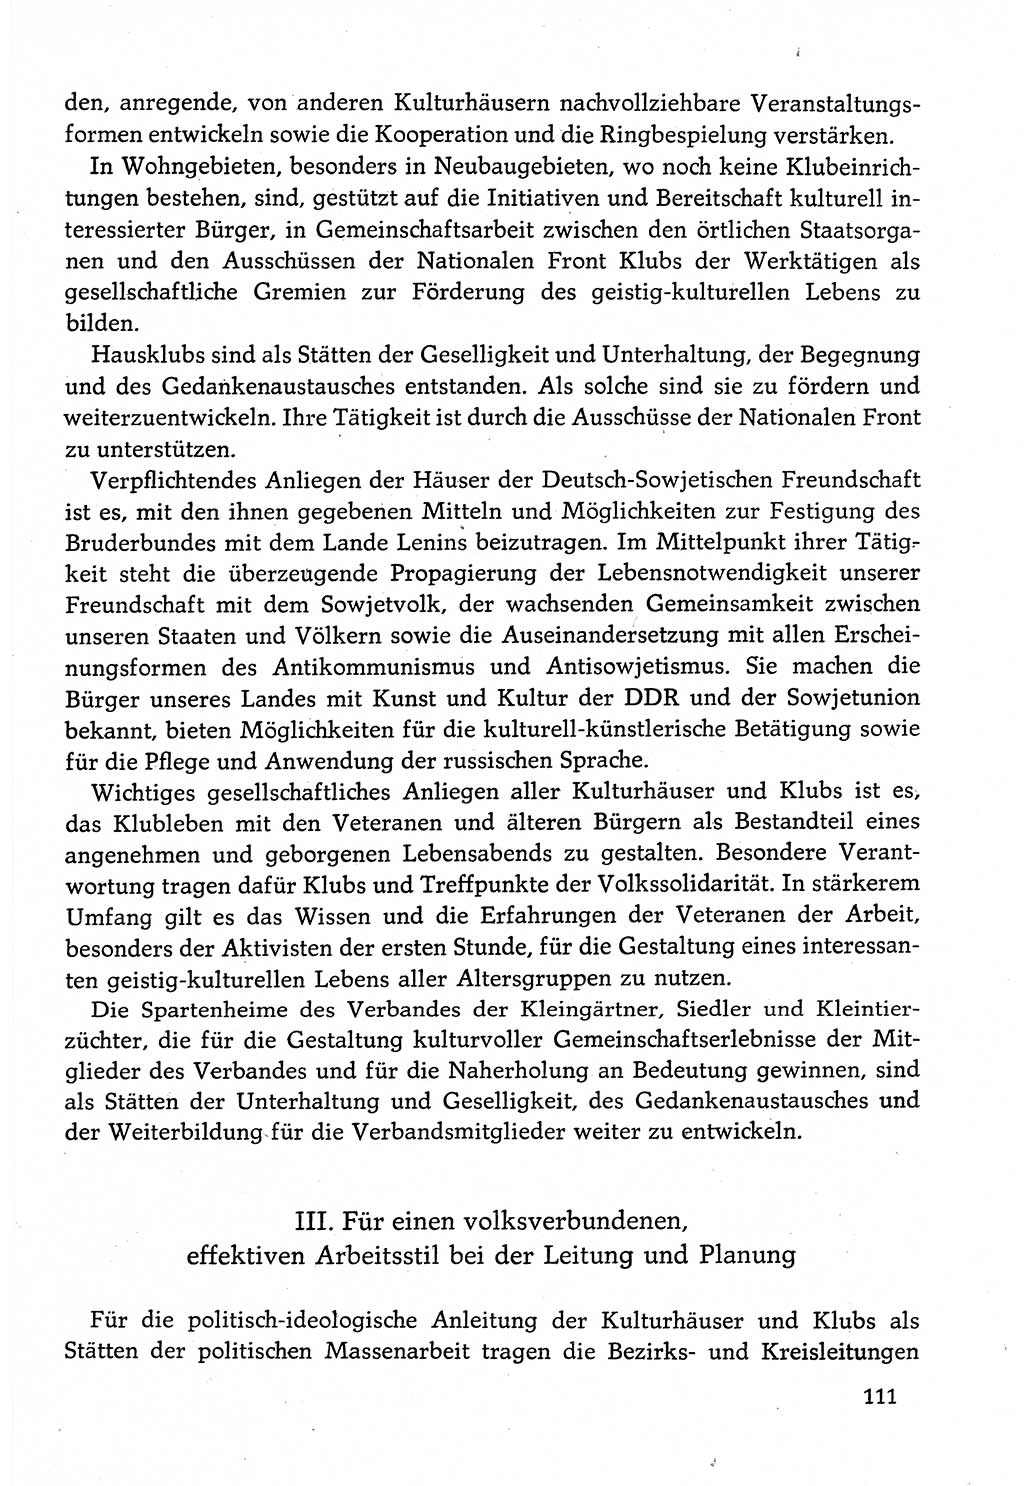 Dokumente der Sozialistischen Einheitspartei Deutschlands (SED) [Deutsche Demokratische Republik (DDR)] 1982-1983, Seite 111 (Dok. SED DDR 1982-1983, S. 111)